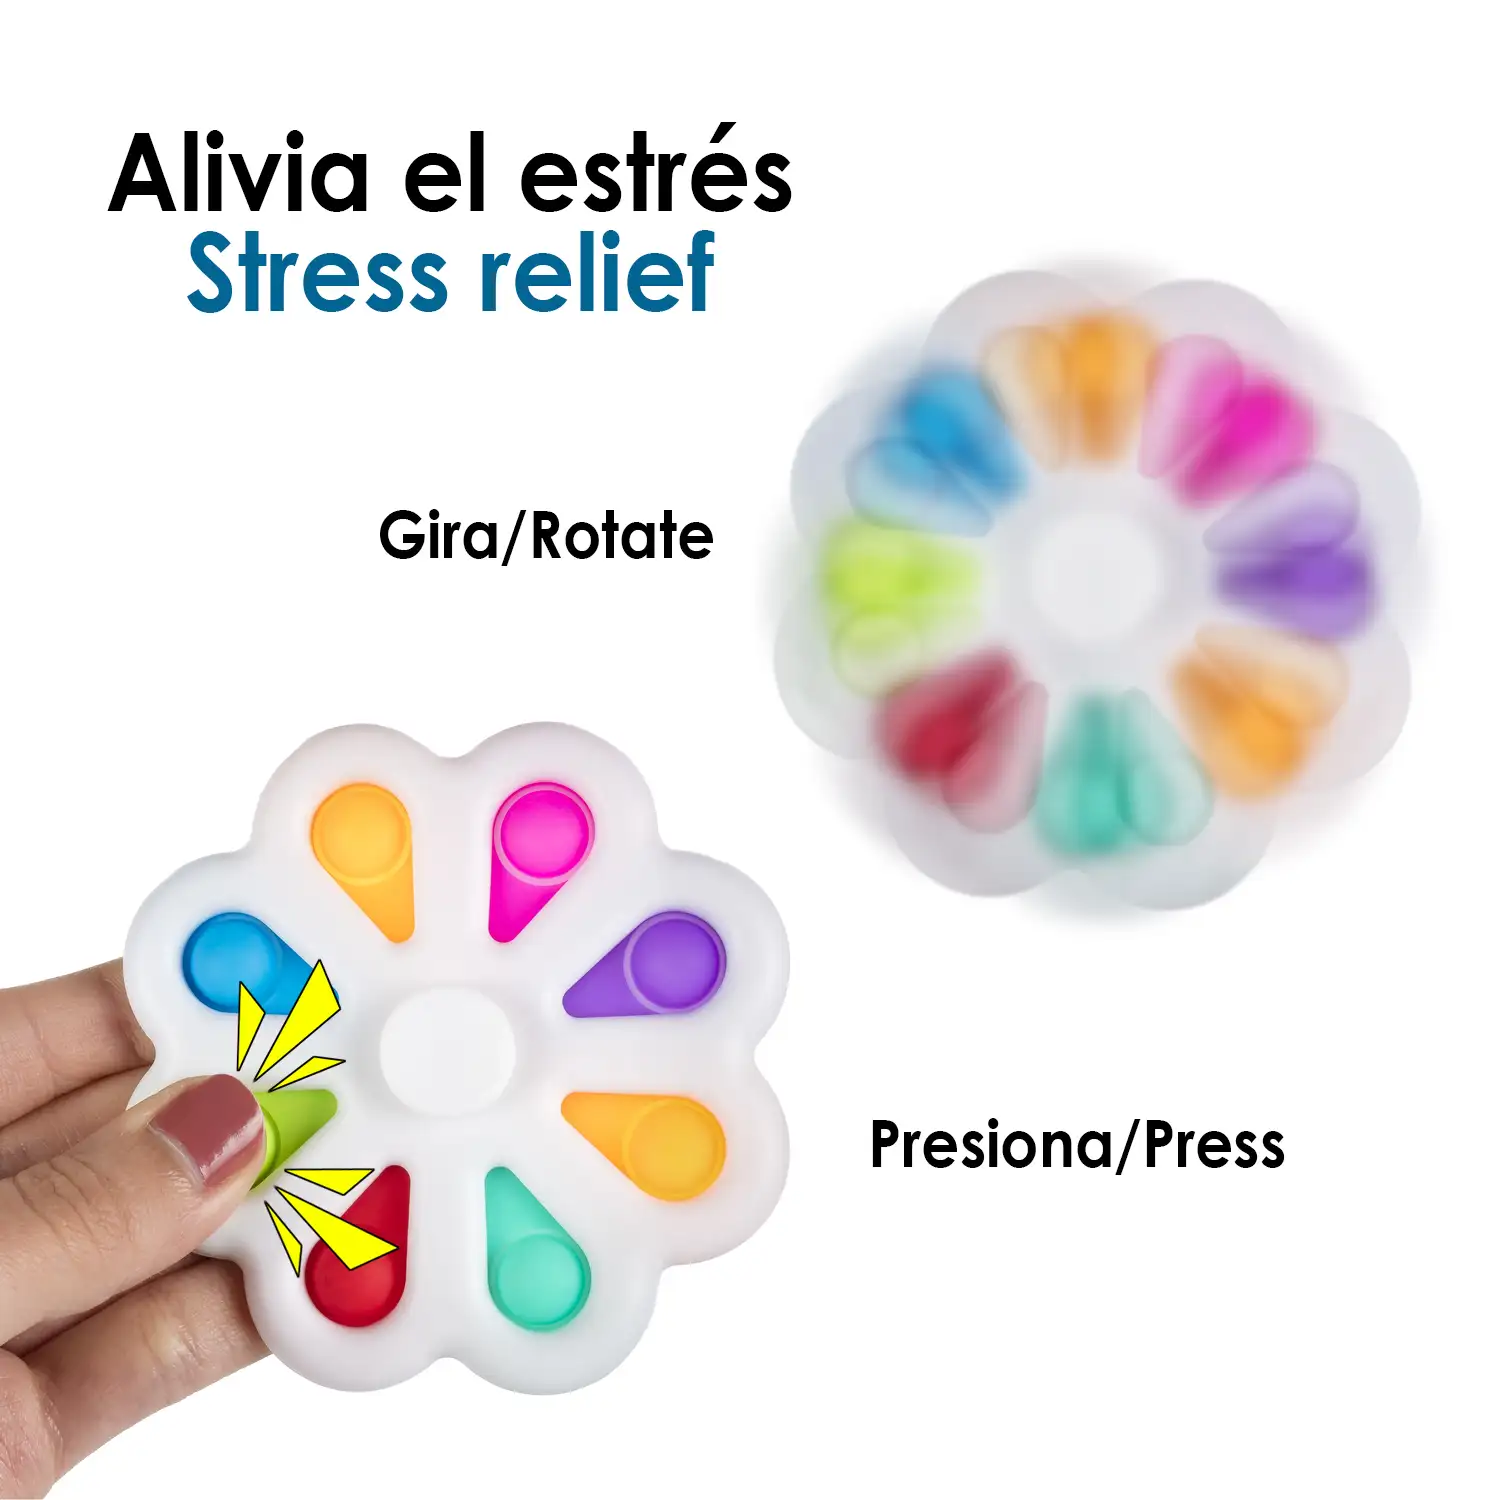 Exlusive Bubble Pop It y Spinner, juguete sensitivo desestresante, burbujas de silicona para apretar y pulsar. Diseño flor con pétalos interactivos y spinner central.